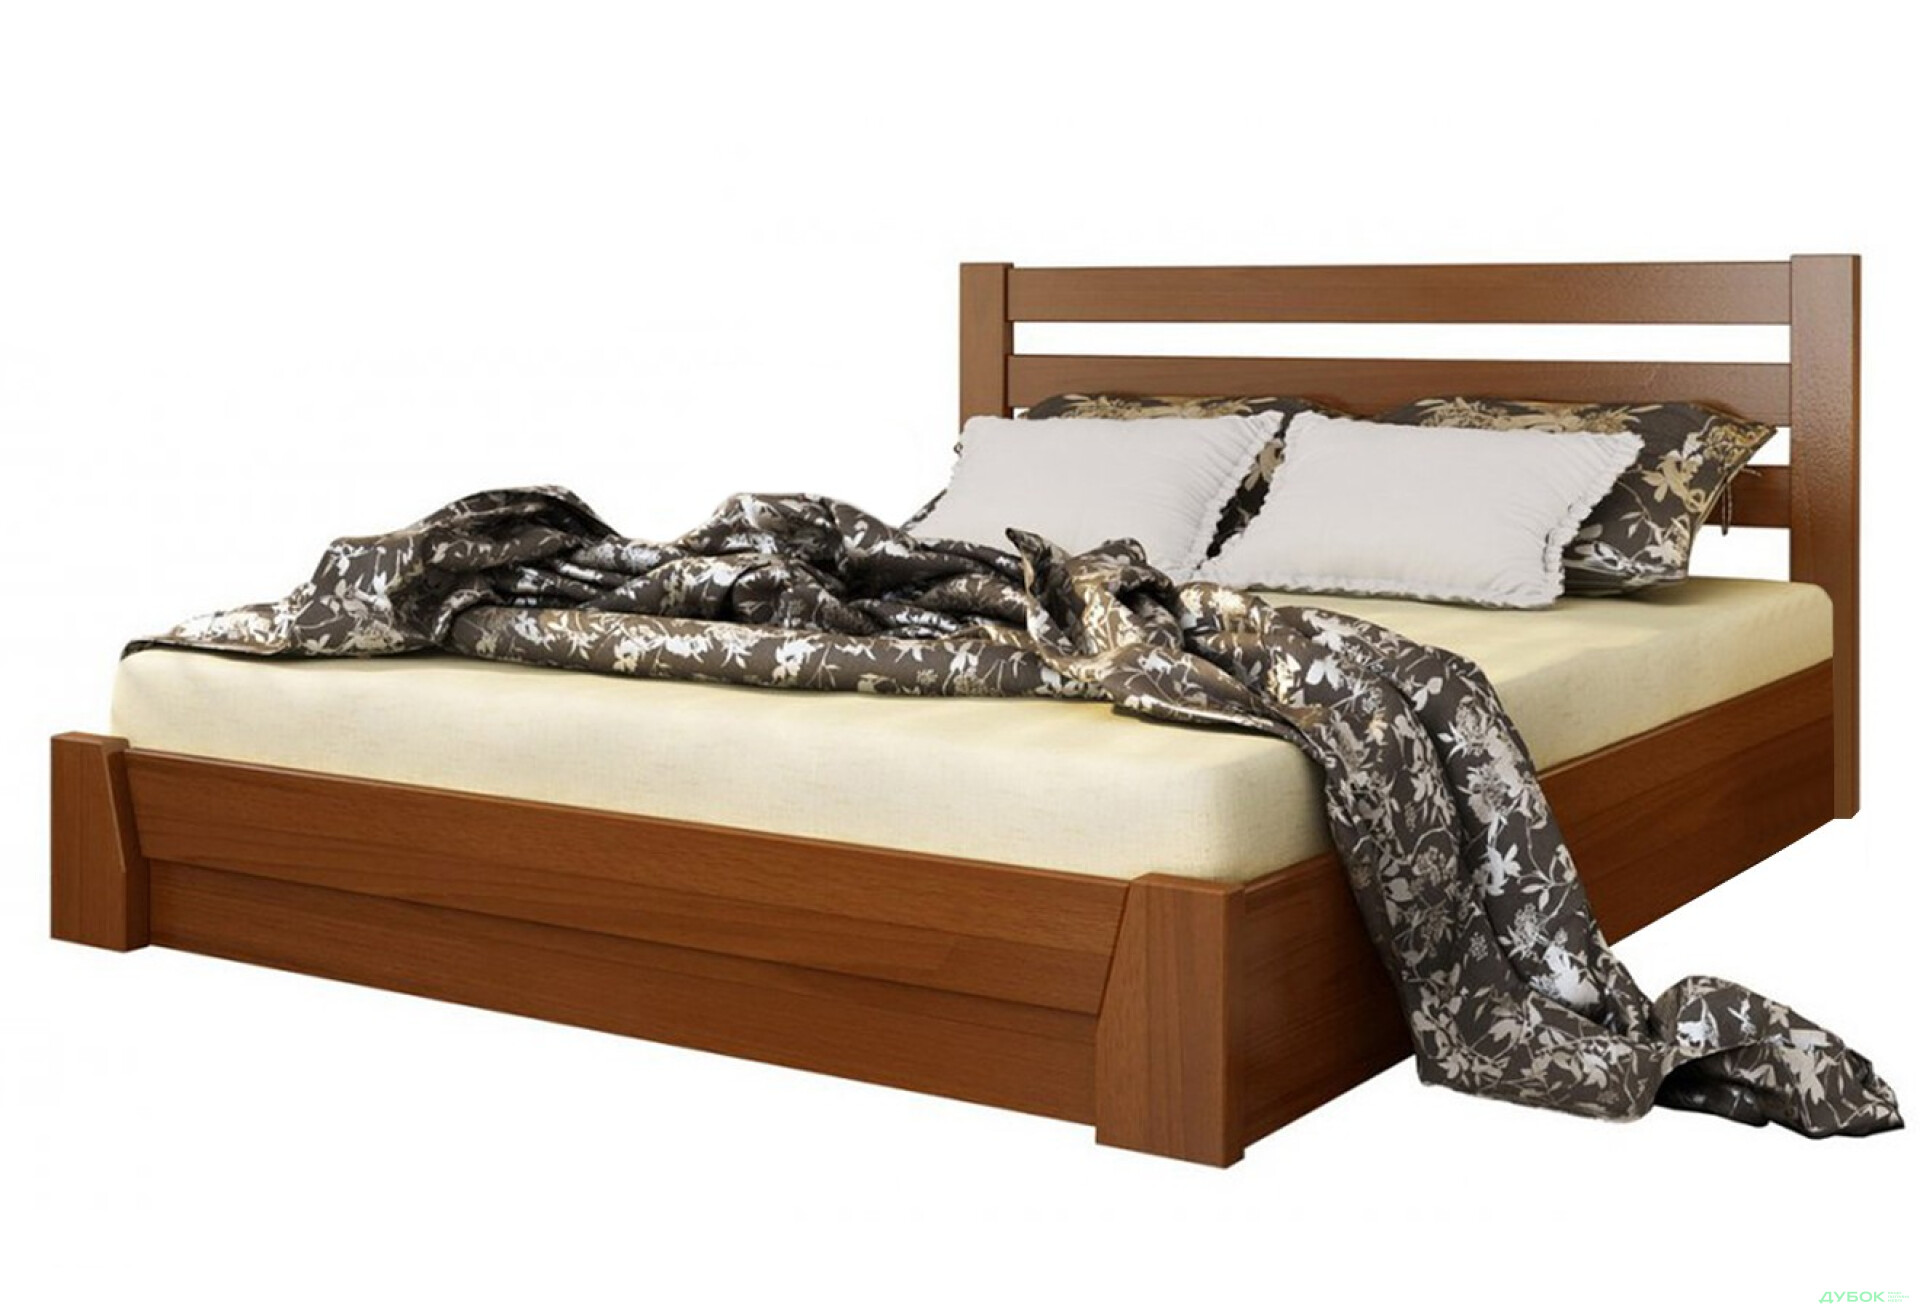 Фото 1 - Серия Тесса кровать Селена 160х200 подъемная (массив) Эстелла